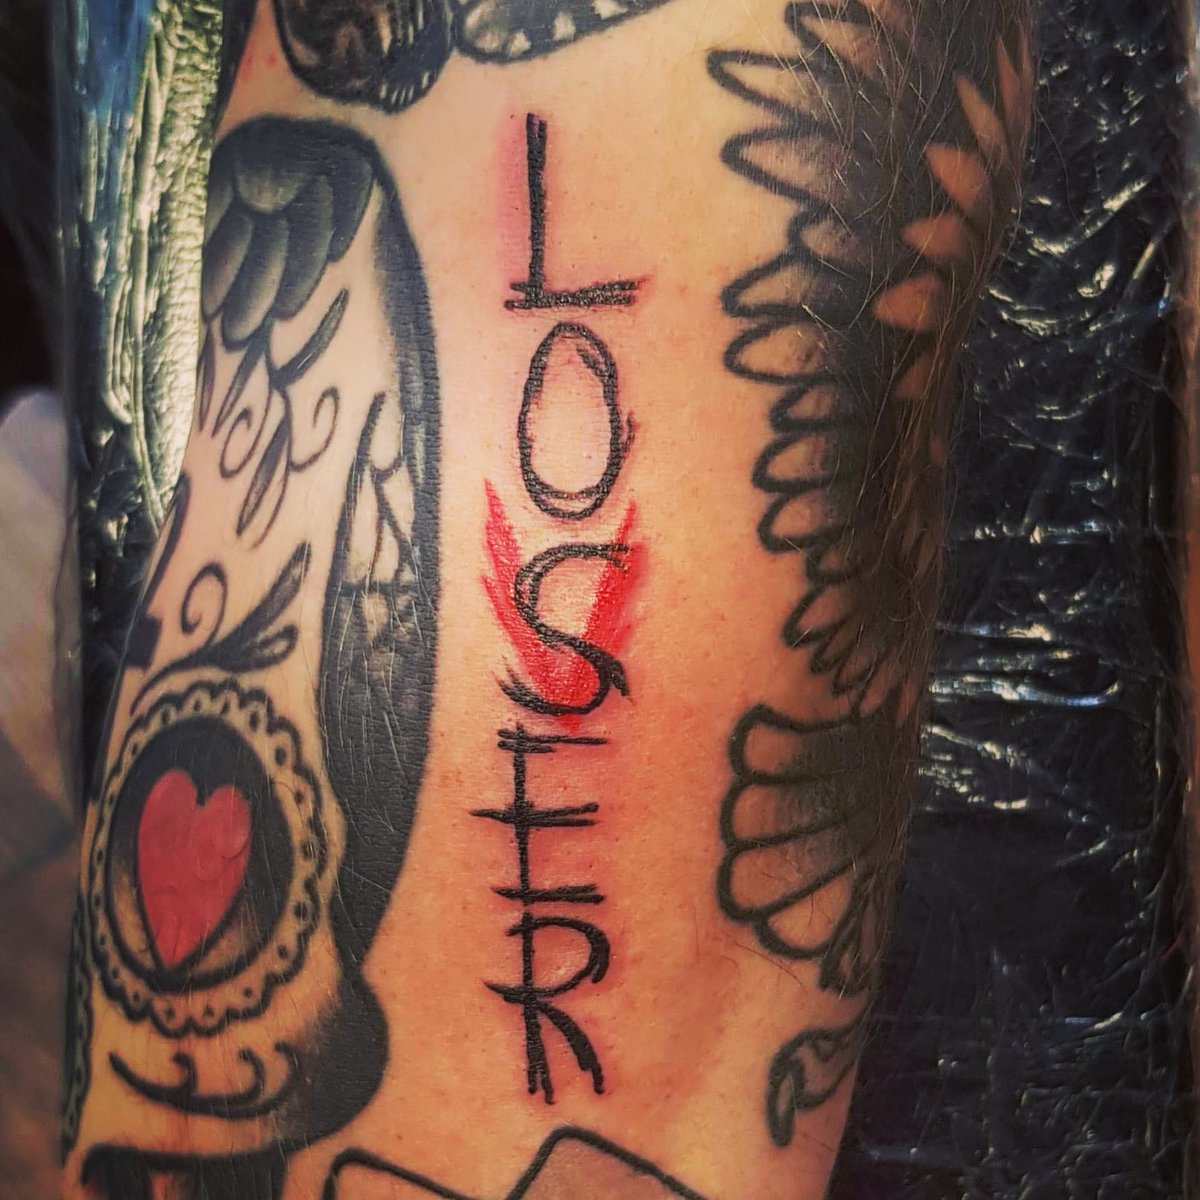 My Eddie Kaspbrak Losers Club tattoo by EZ at Skin Deep Tattoo San  Antonio TX  rtattoos